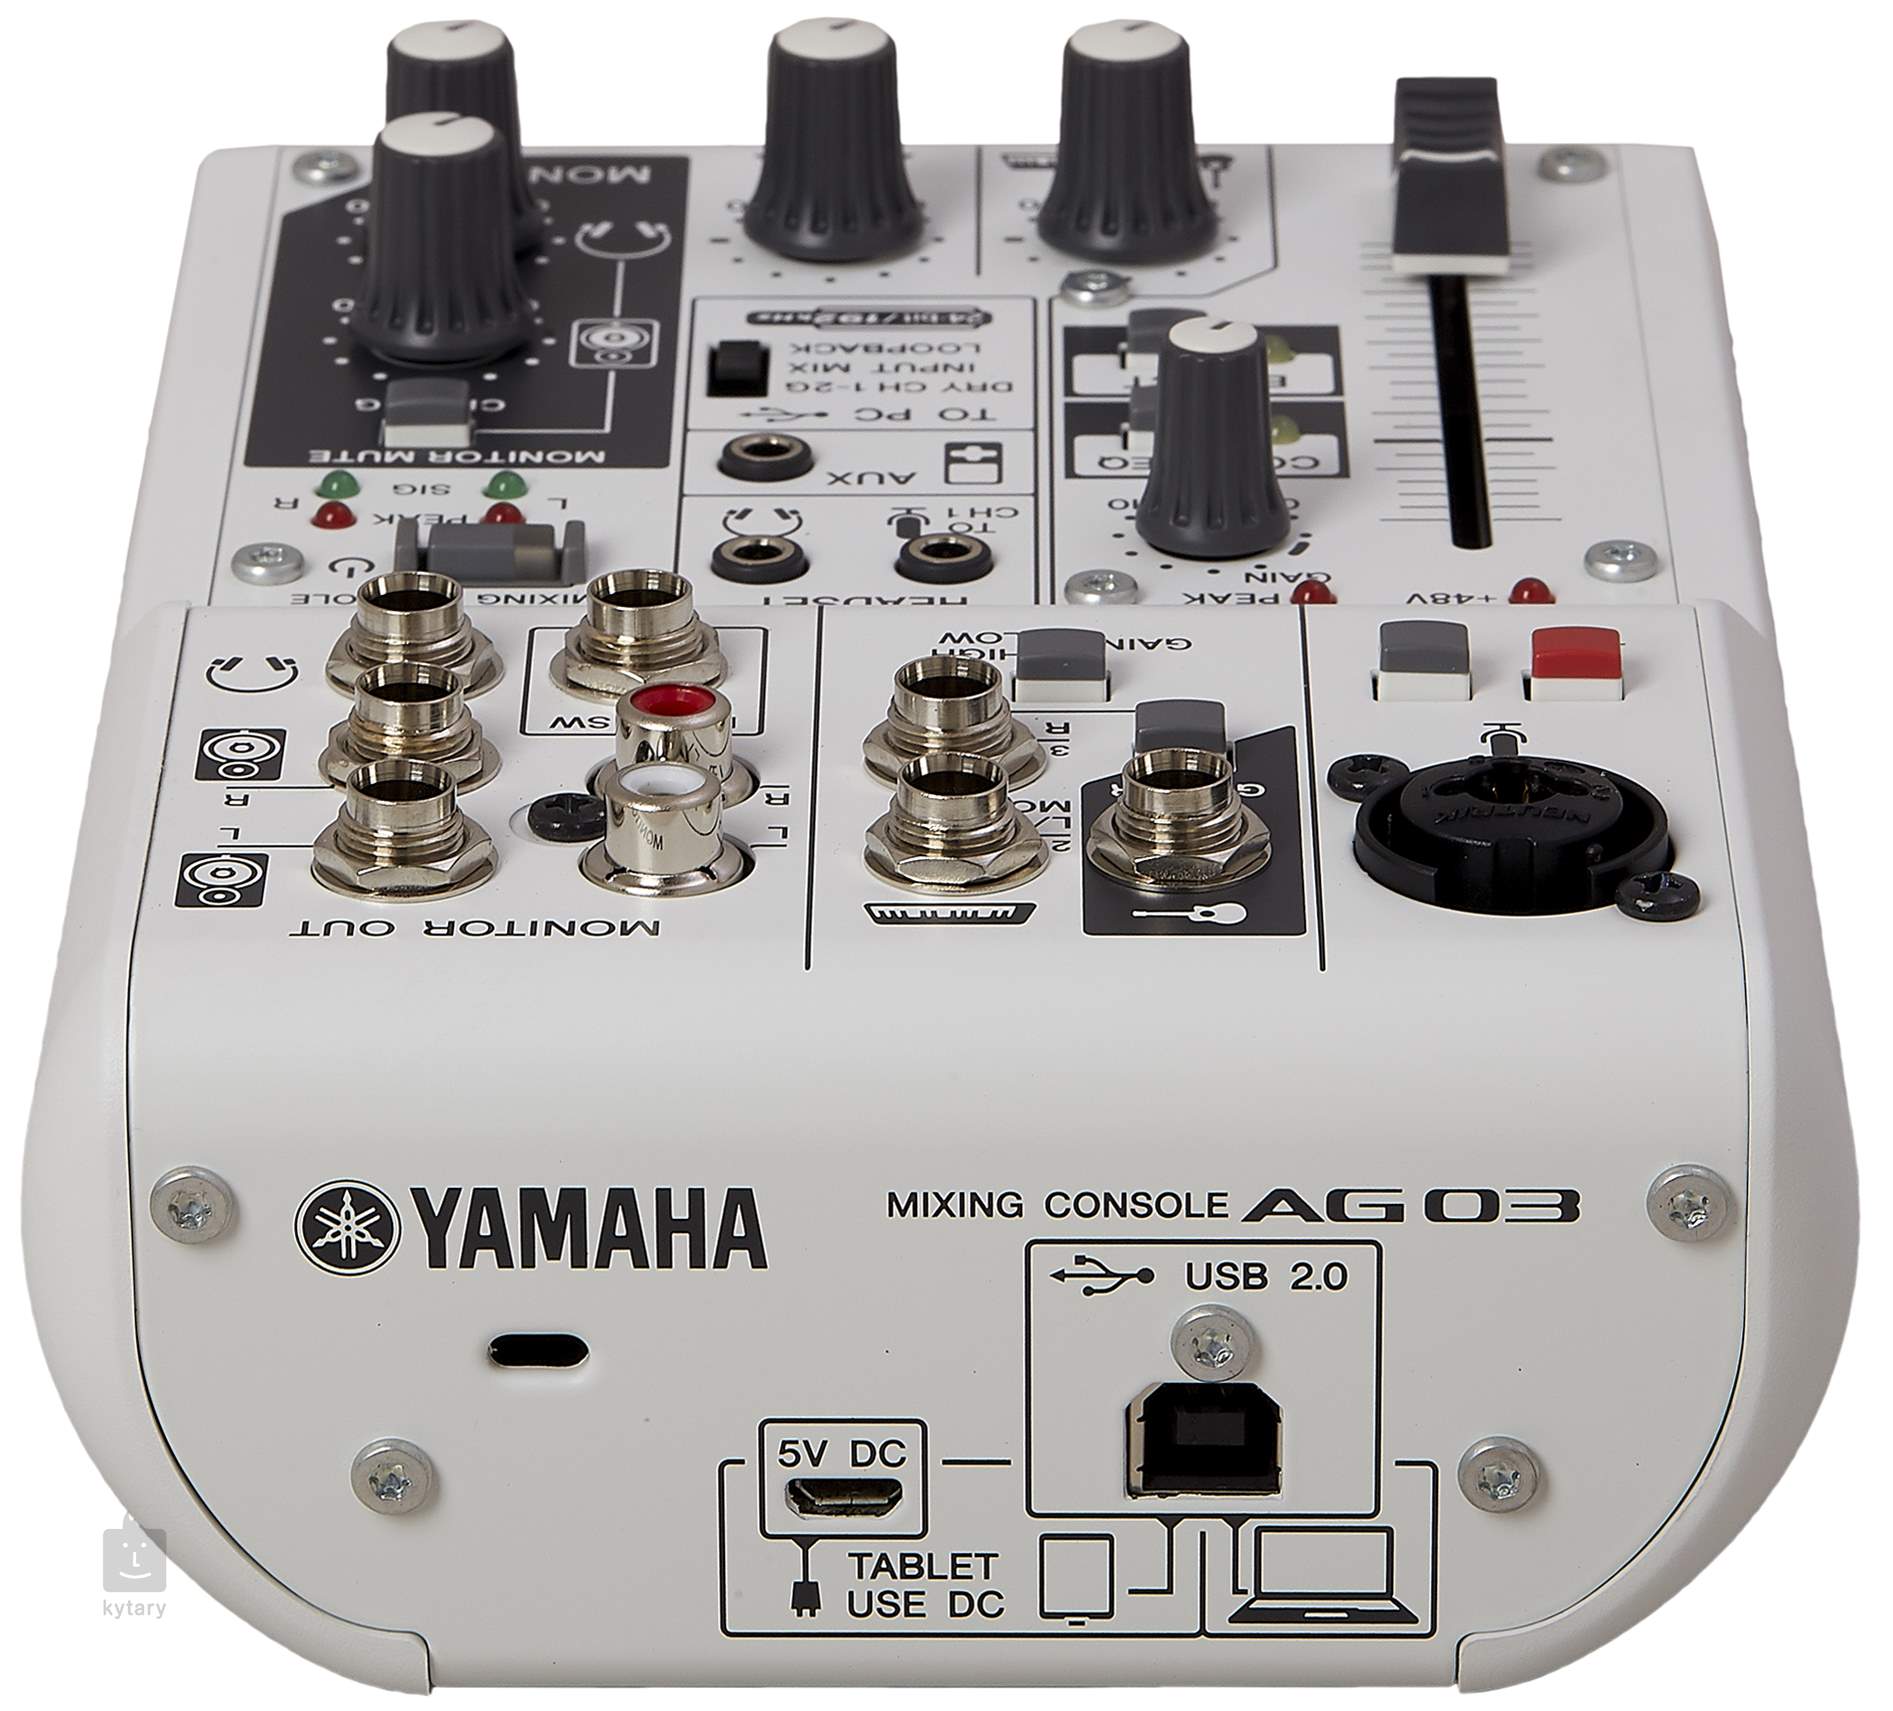 YAMAHA AG03 USB Audio Interface